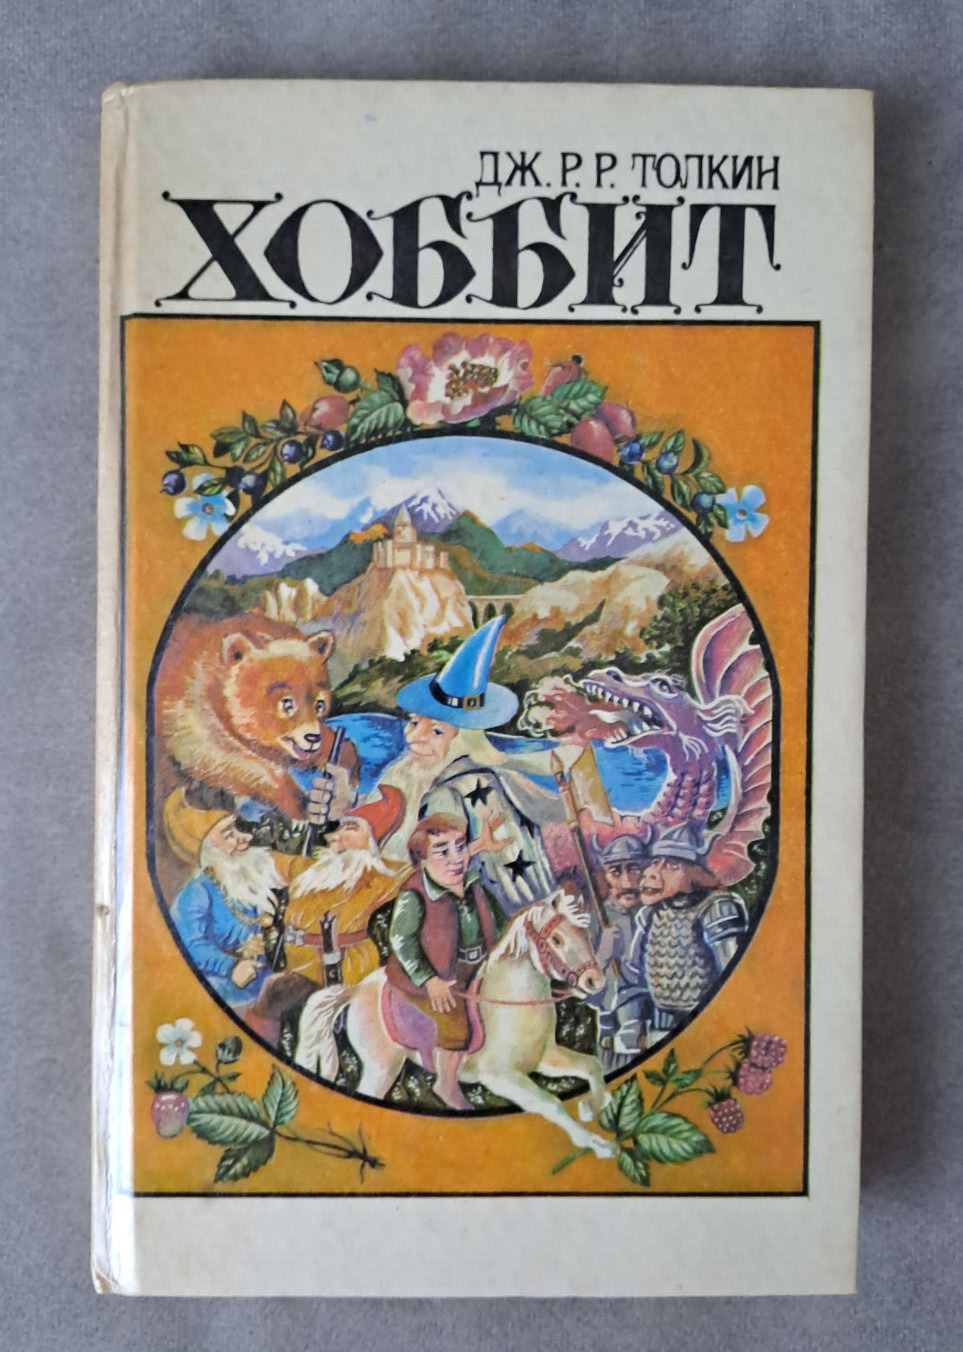 1989 Хоббит The Hobbit John Tolkien Minsk ed. Fairy tale Children Russian book